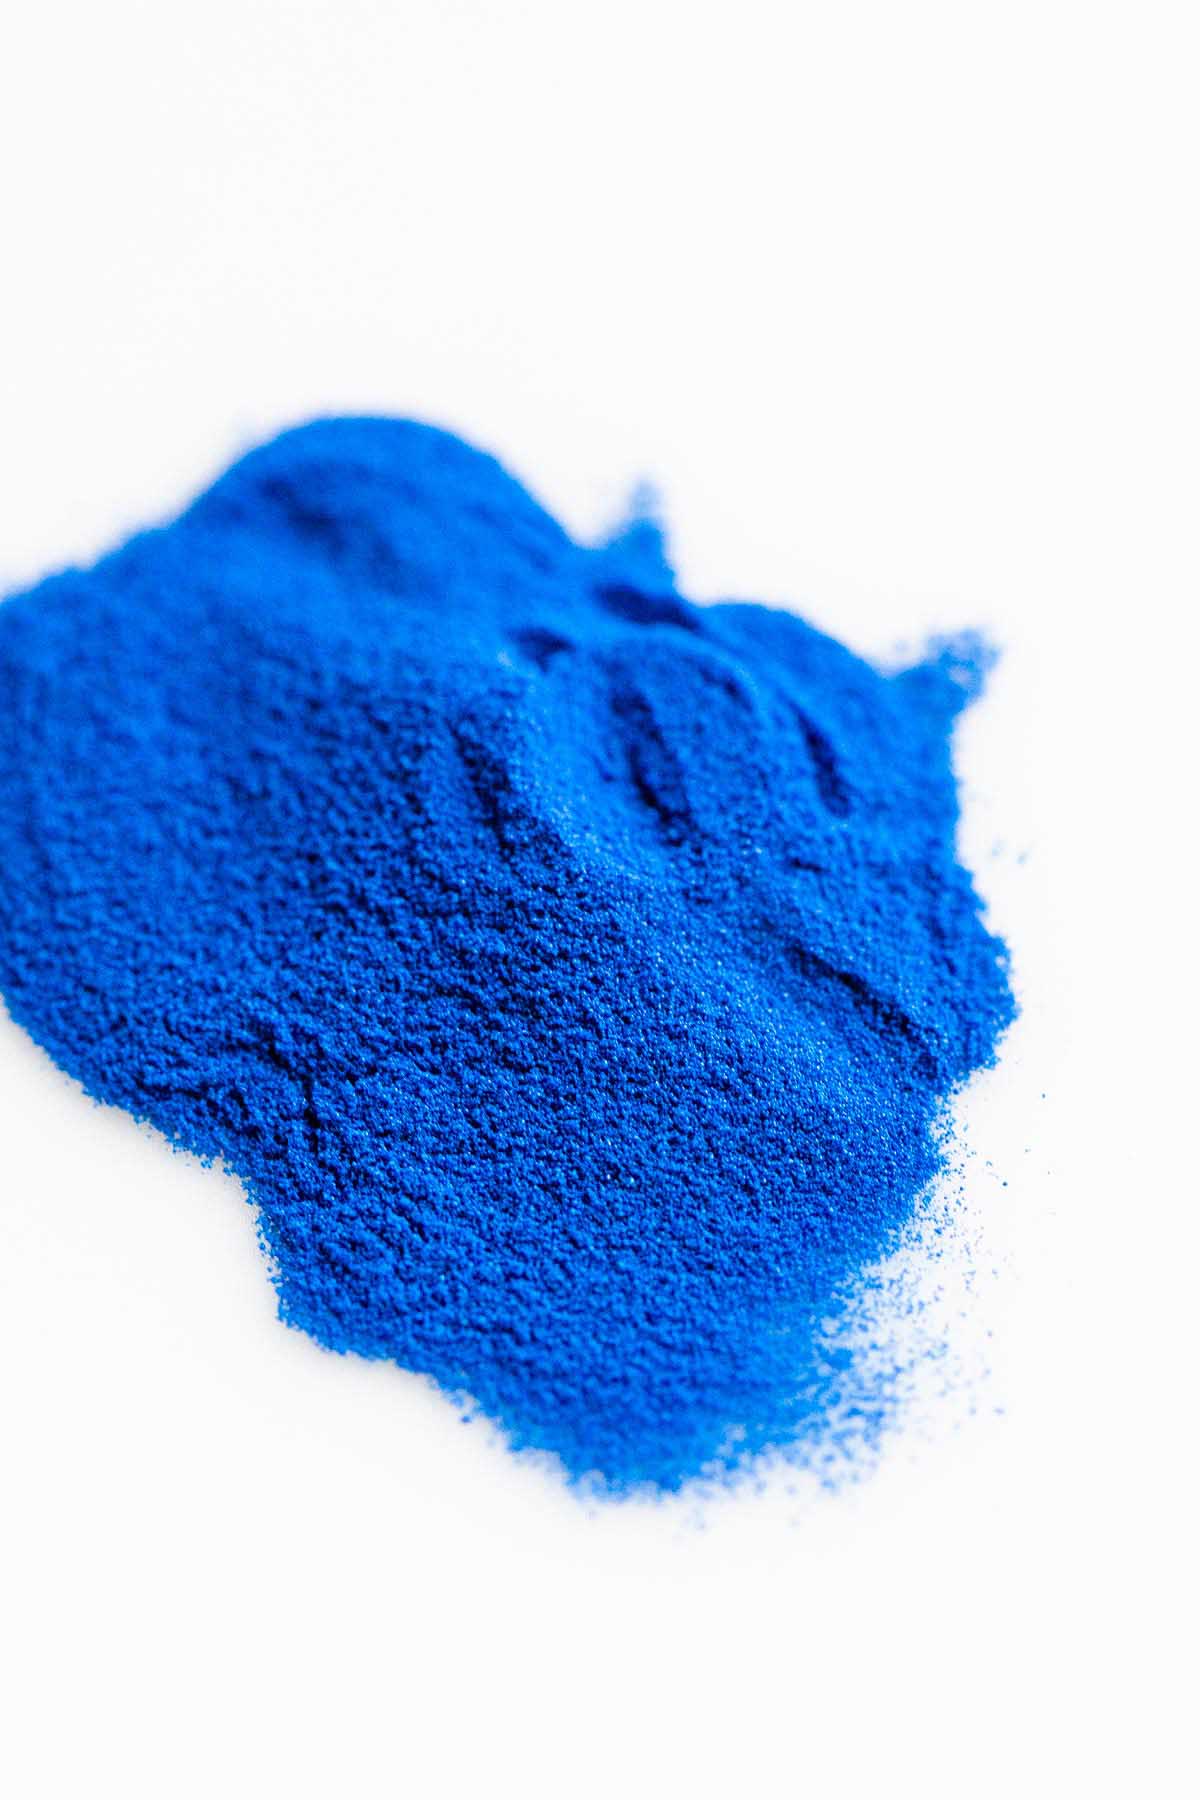 blue spirulina powder